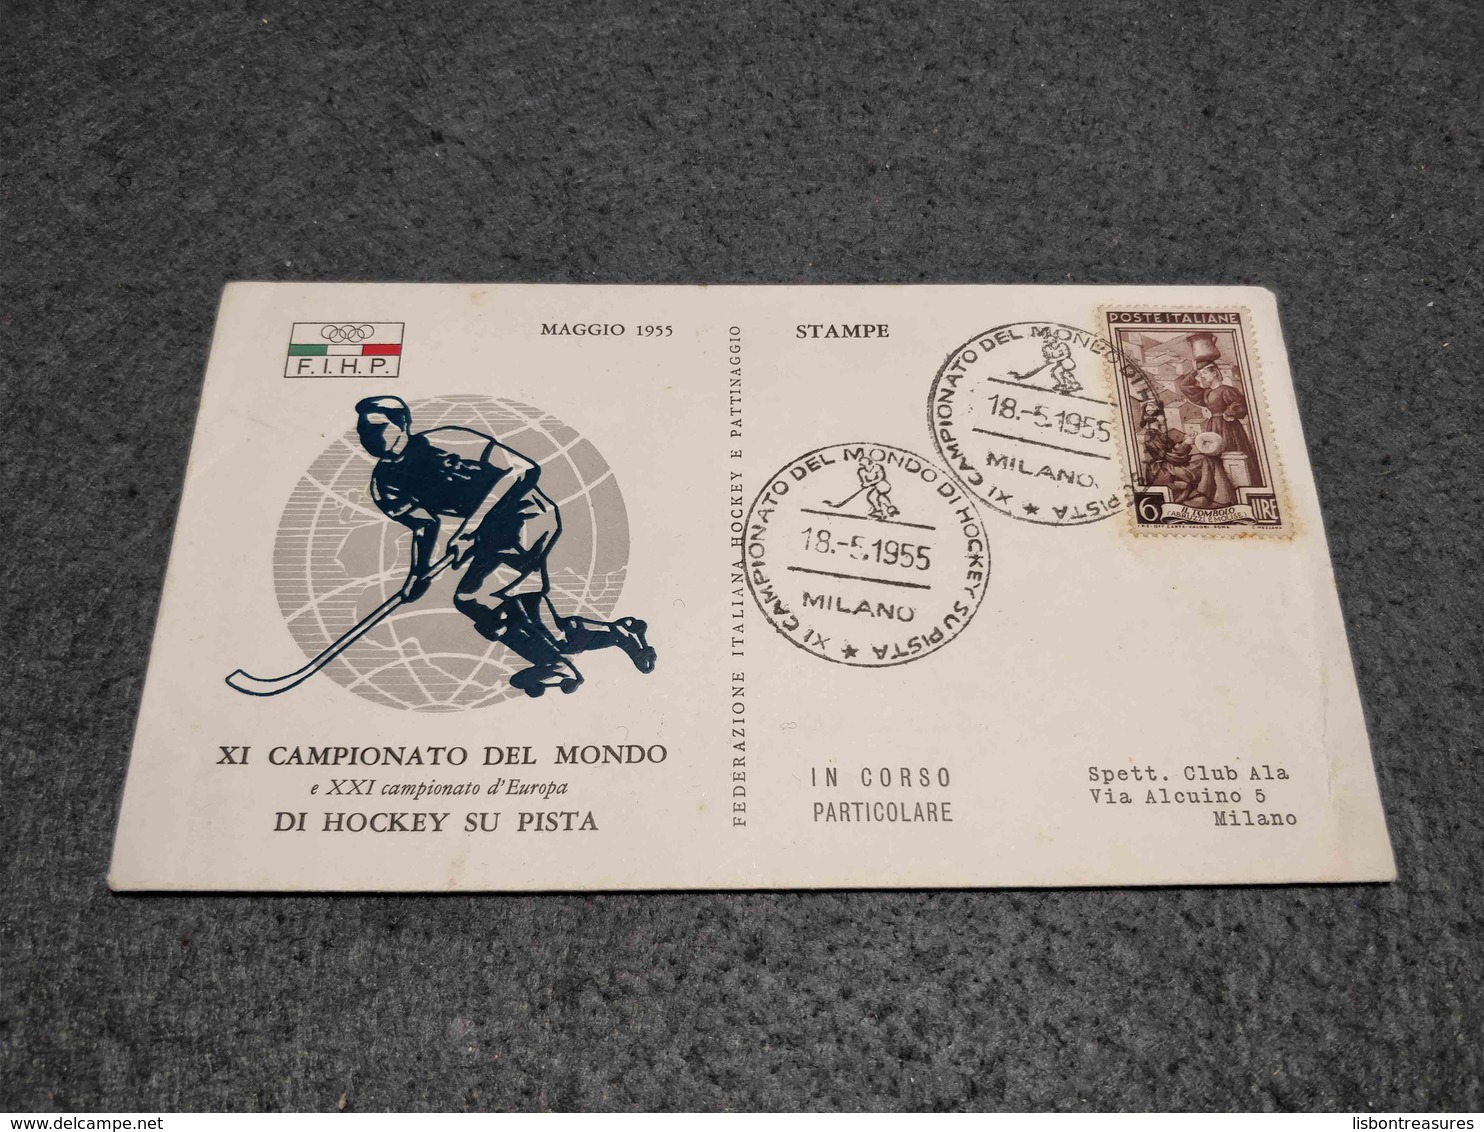 RARE ITALY FDC COVER XI CAMPIONATO DEL MONDO DI HOCKEY SU PISTA 1955 - Hockey (Field)